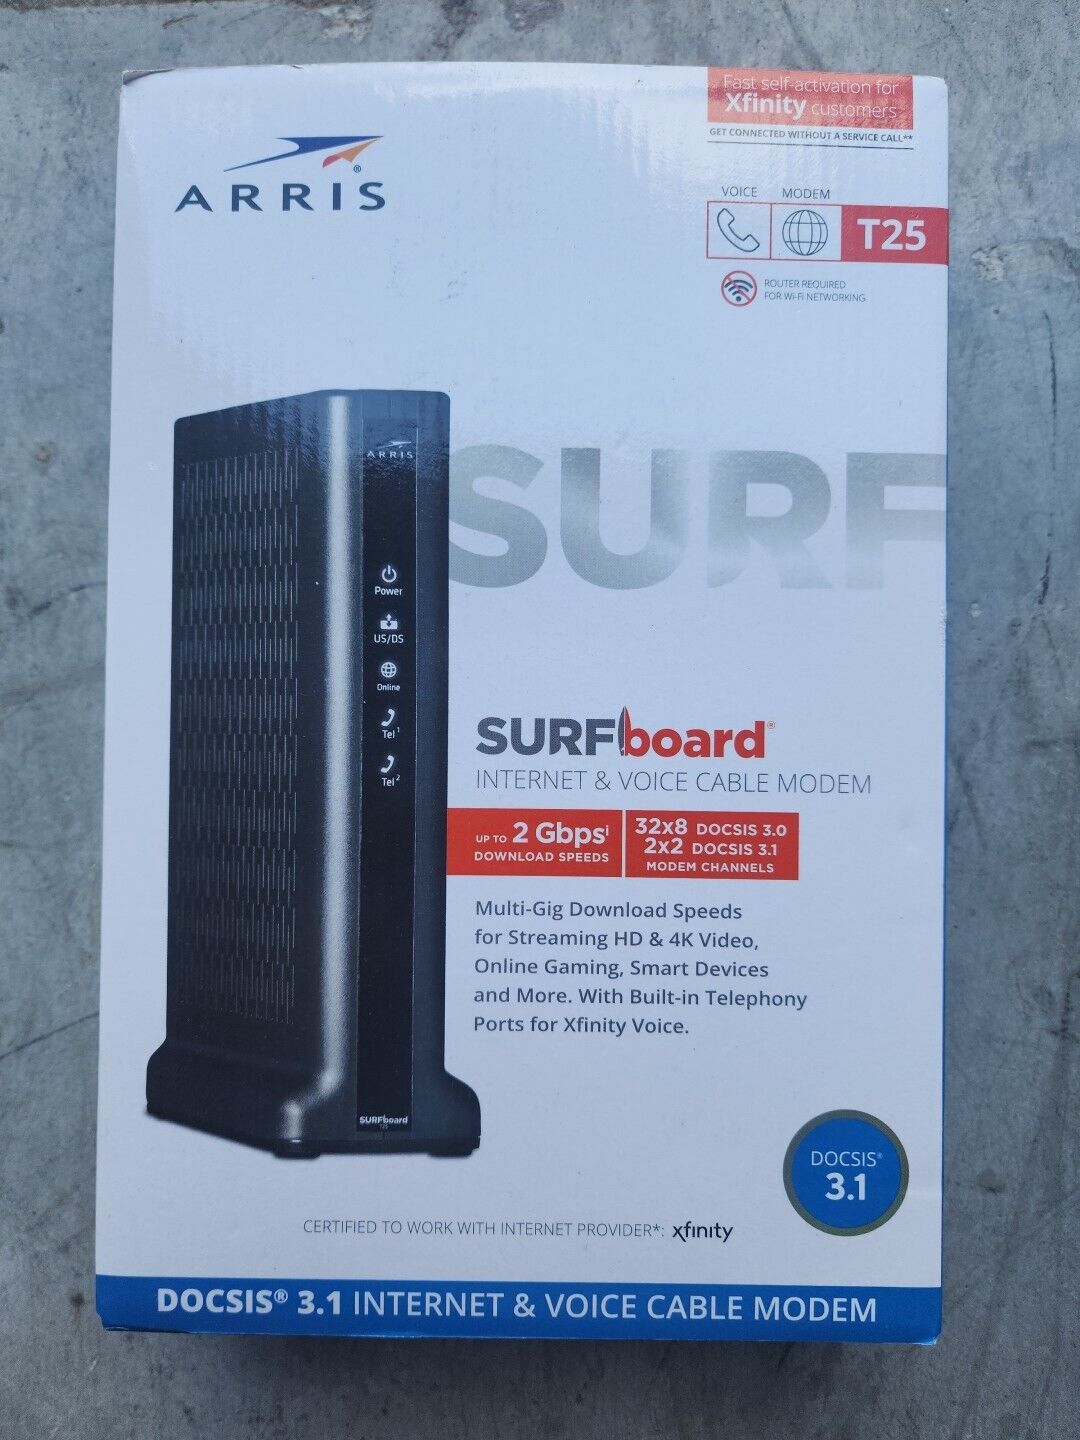 Mint ARRIS Surfboard T25 32x8 DOCSIS 3.1 Cable Modem Xfinity Internet & Voice